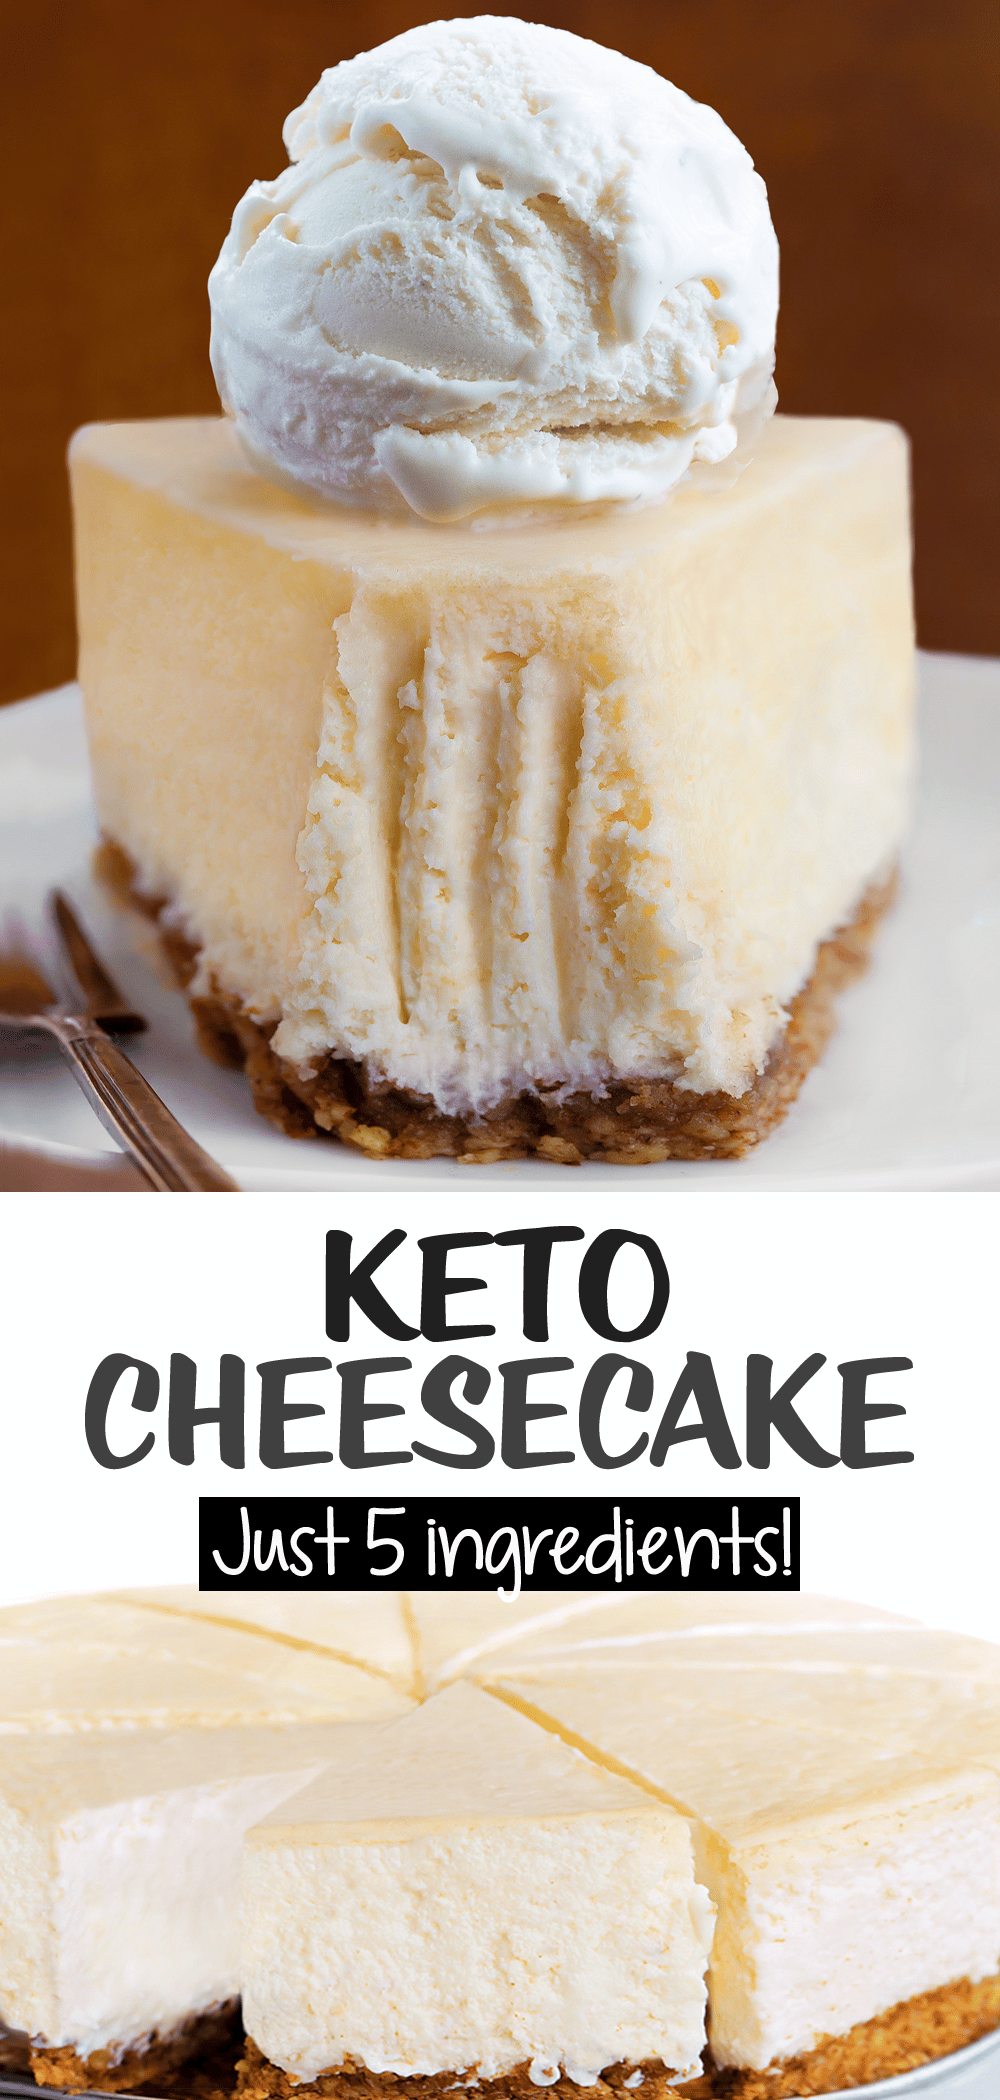 Keto Cheesecake Recipe Just 5